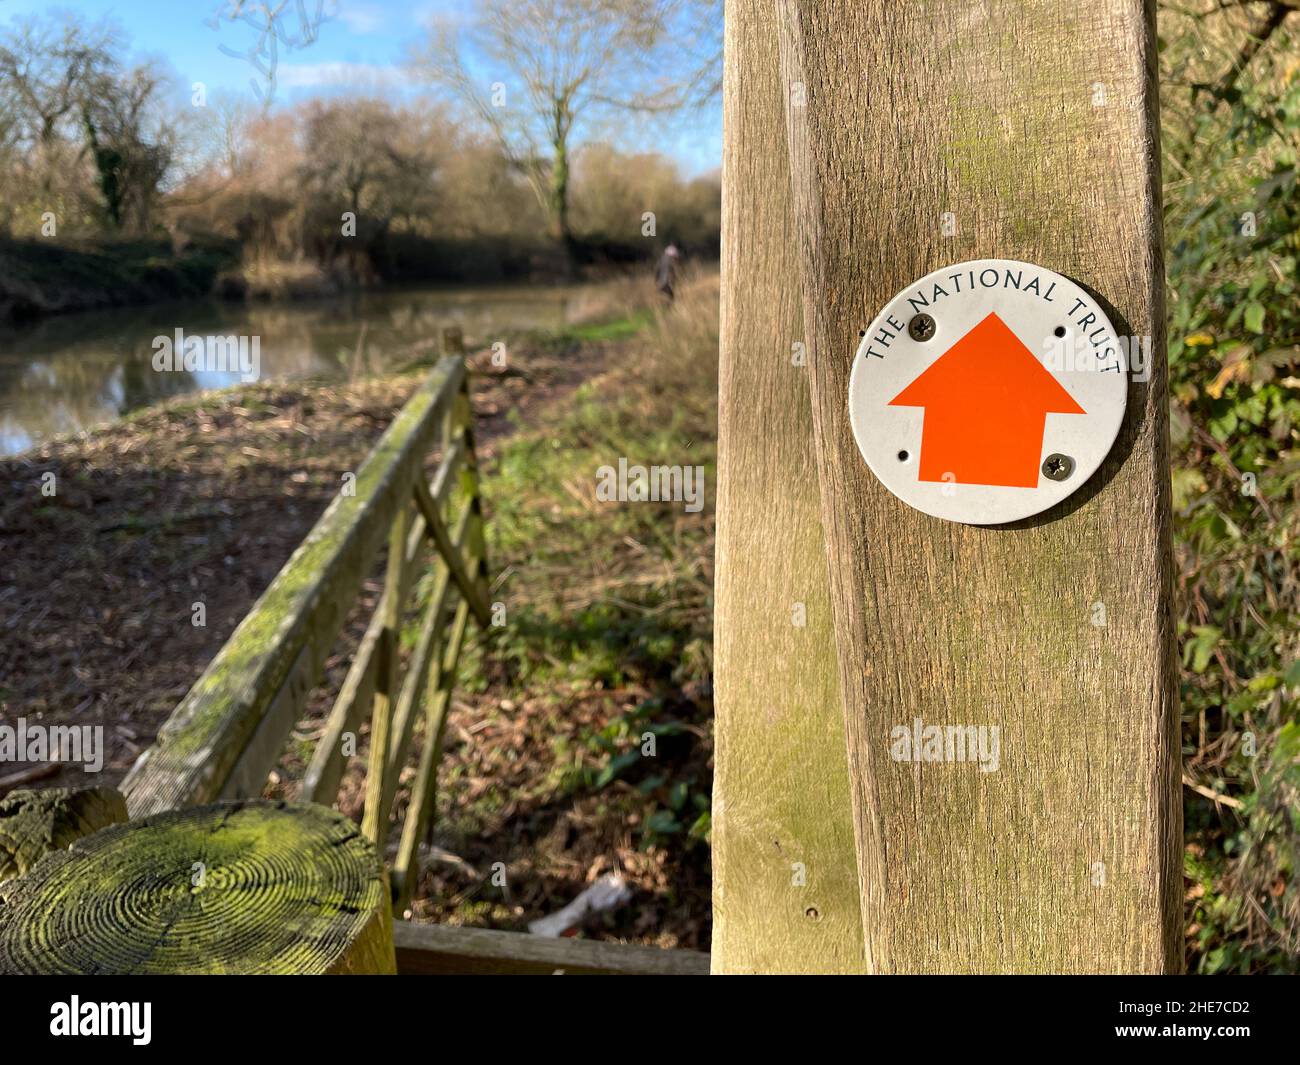 La segnaletica su un cancello di legno ha un cartello rotondo con una freccia direzionale arancione e le parole del National Trust. Strada Stour Valley Foto Stock